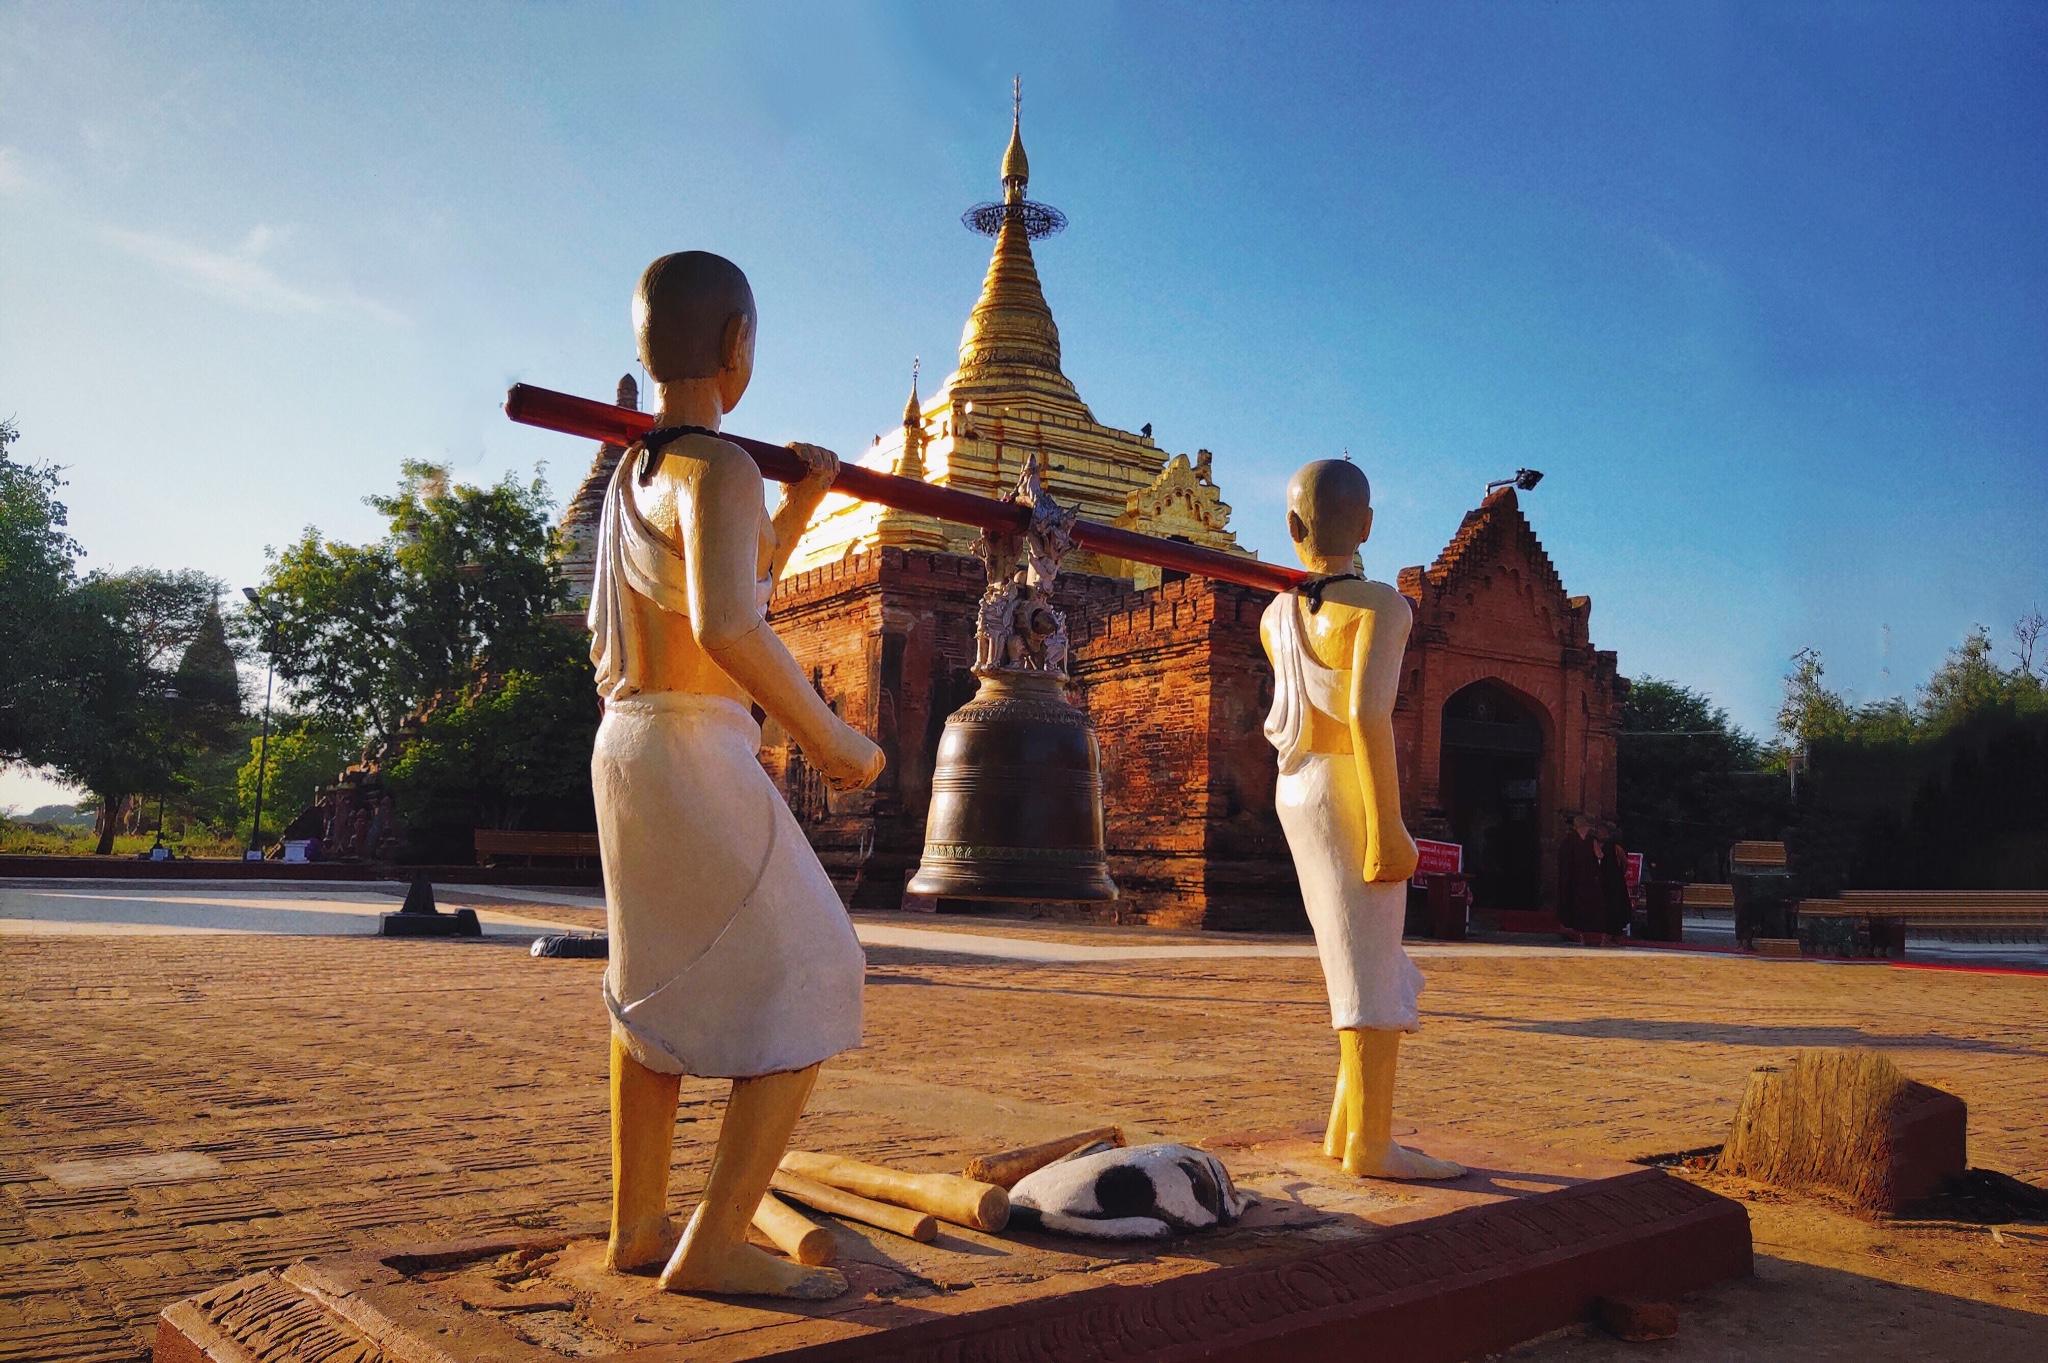 【缅甸自由行攻略】11天4城，3000多人民币赤脚游缅甸